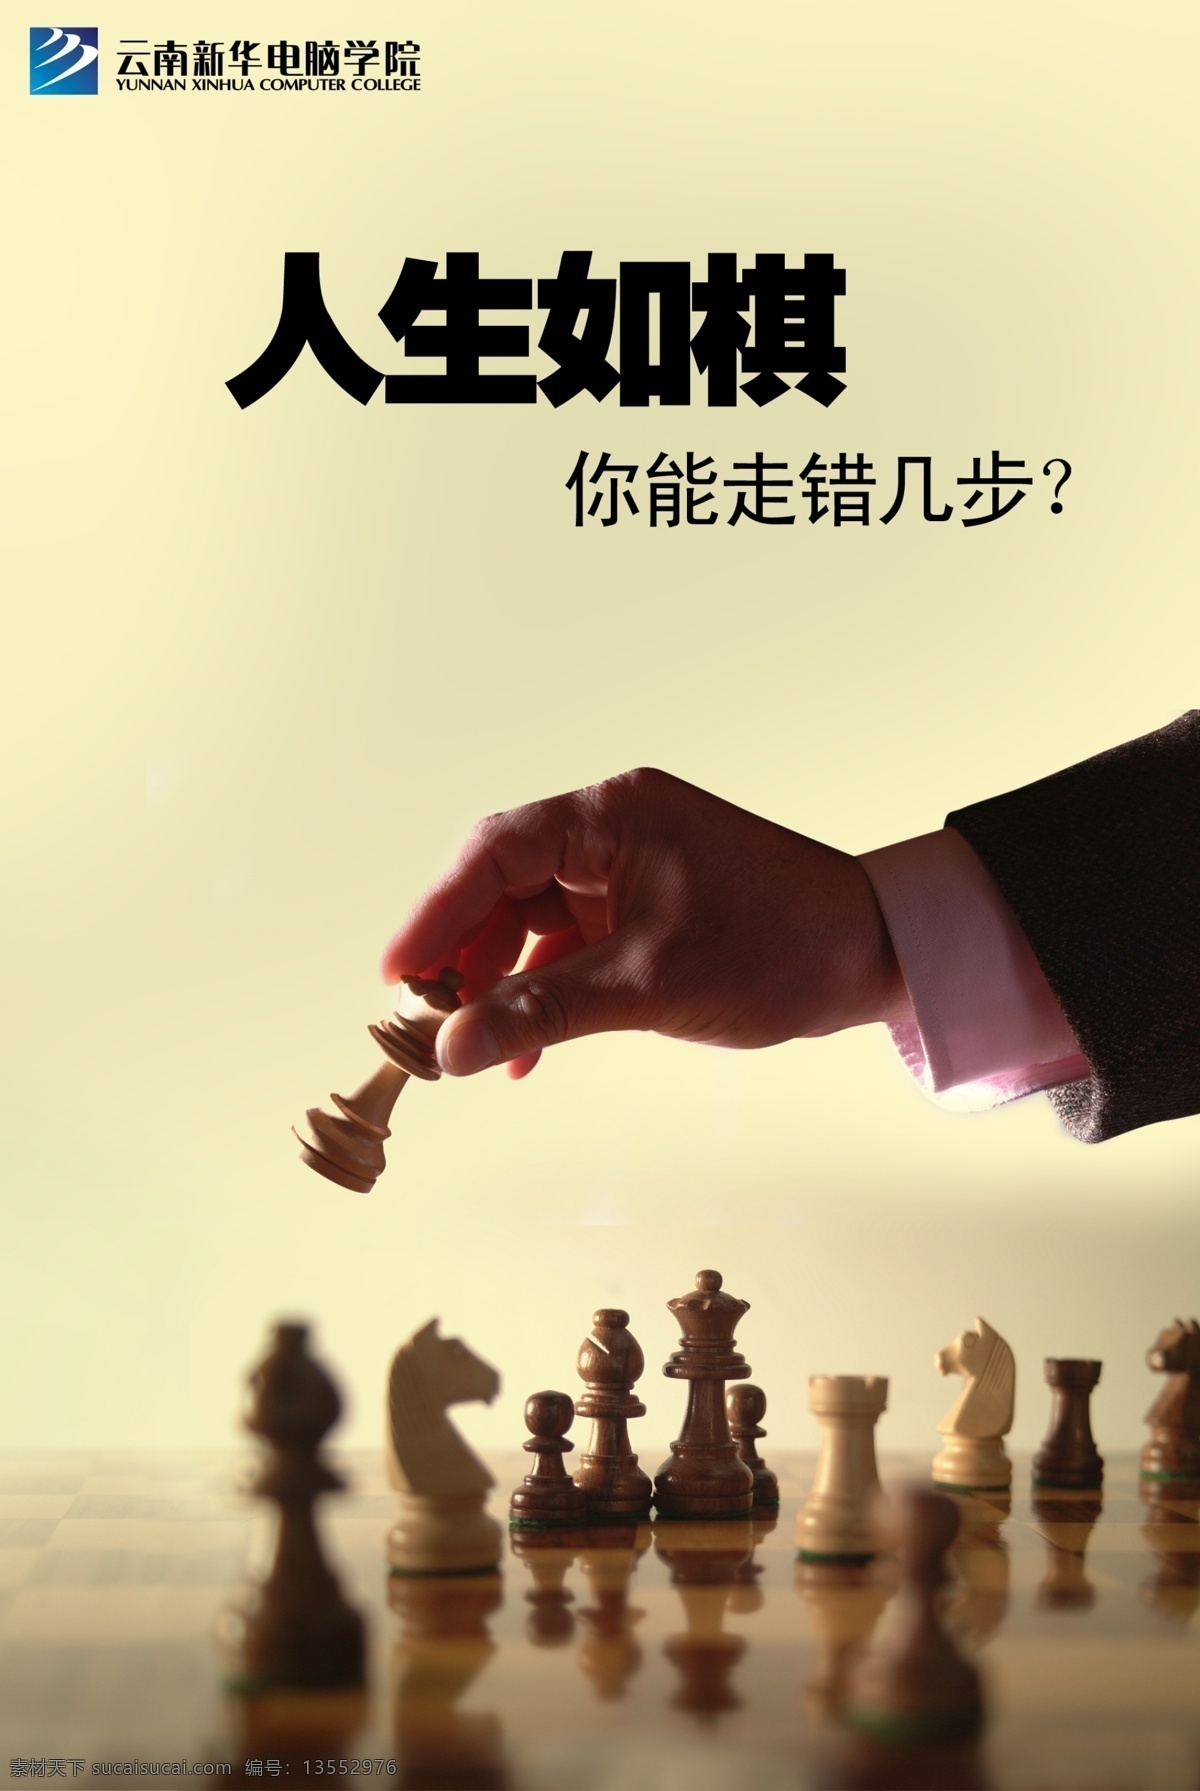 学校 励志 海报 张贴 象棋人生 励志广告 教育 张贴广告 国际象棋 下棋 人生 广告设计模板 源文件